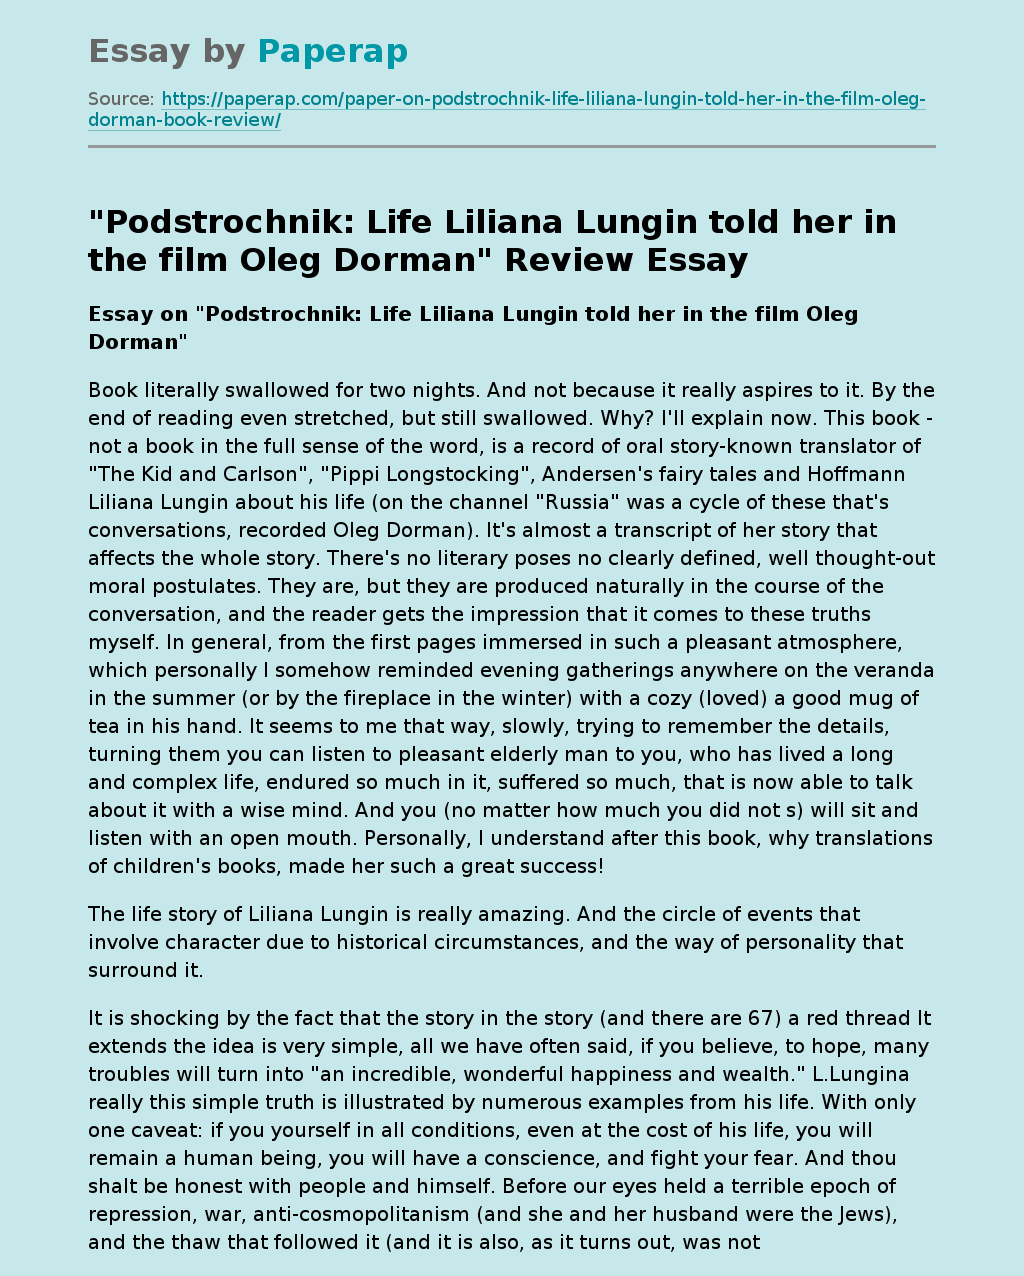 Liliana Lungina’s Life Story